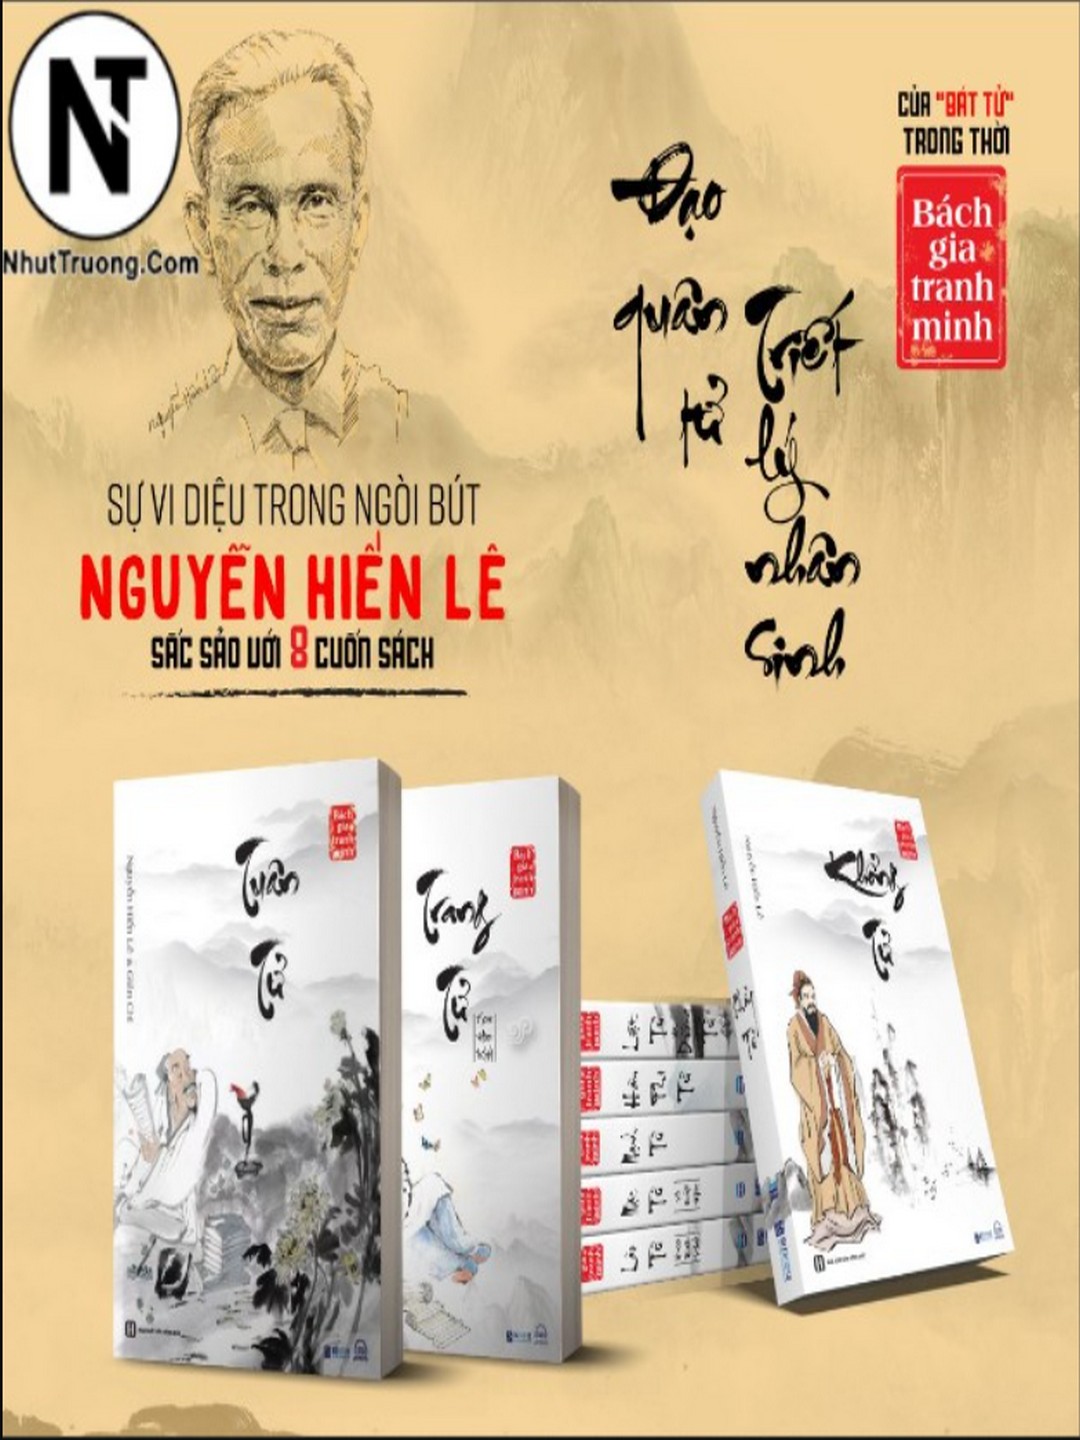 Bách gia tranh minh – Bộ 8 cuốn sách quý hiếm của Nguyễn Hiến Lê DOWNLOAD EBOOK PDF